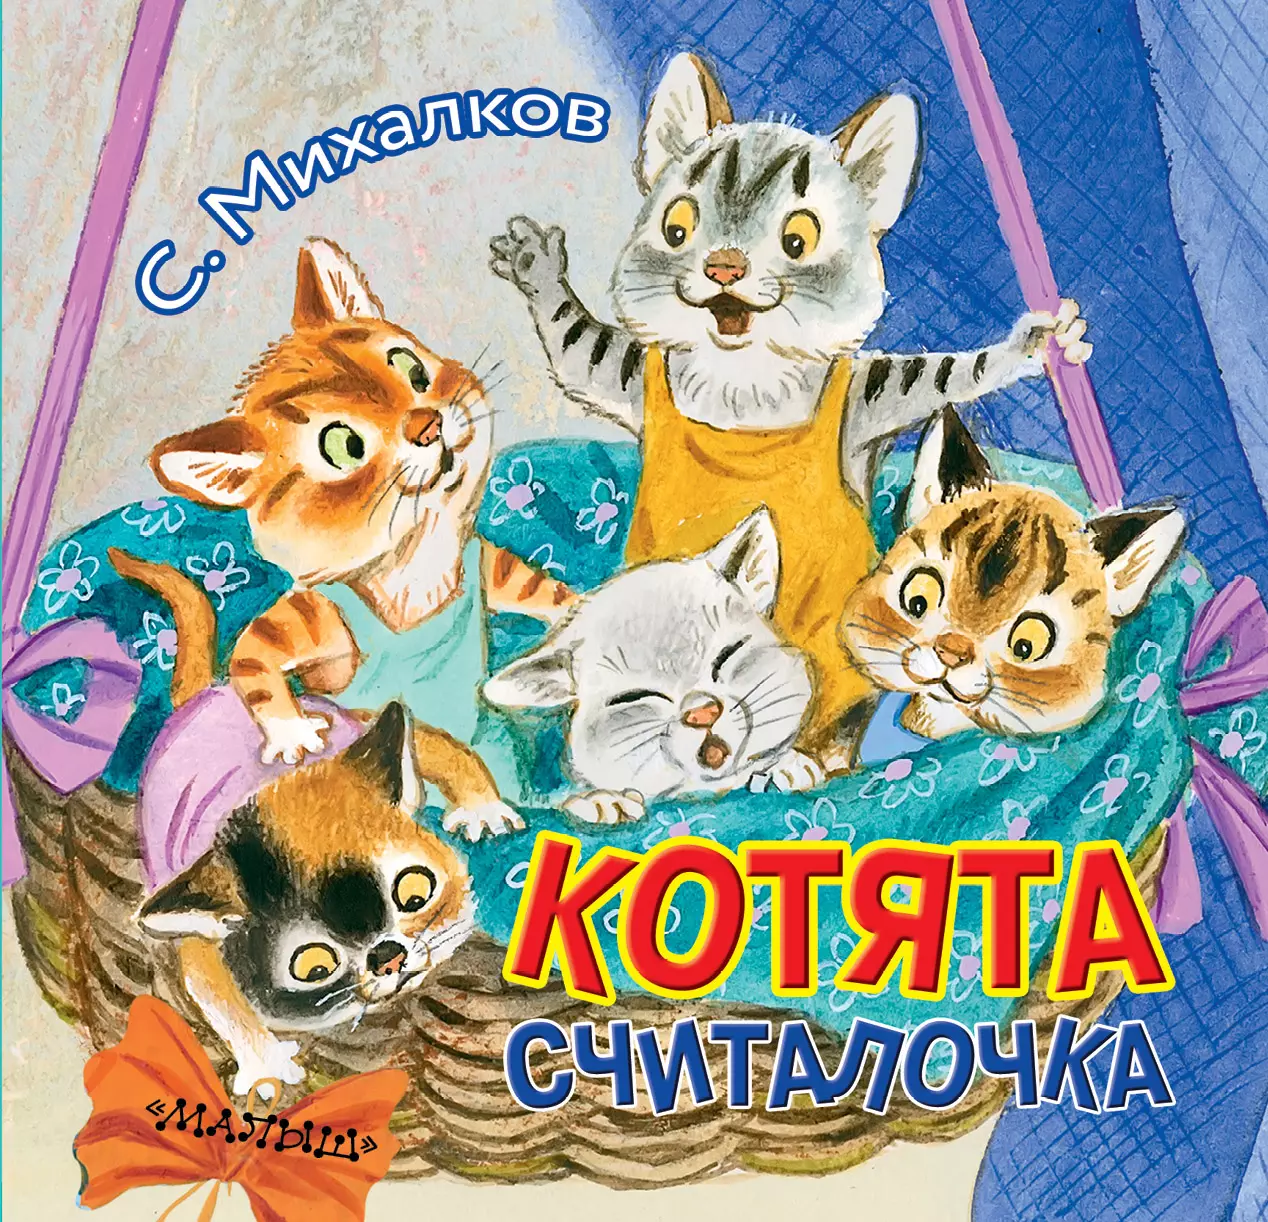 Котята михалкова читать. Книга котята (Михалков с.в.).